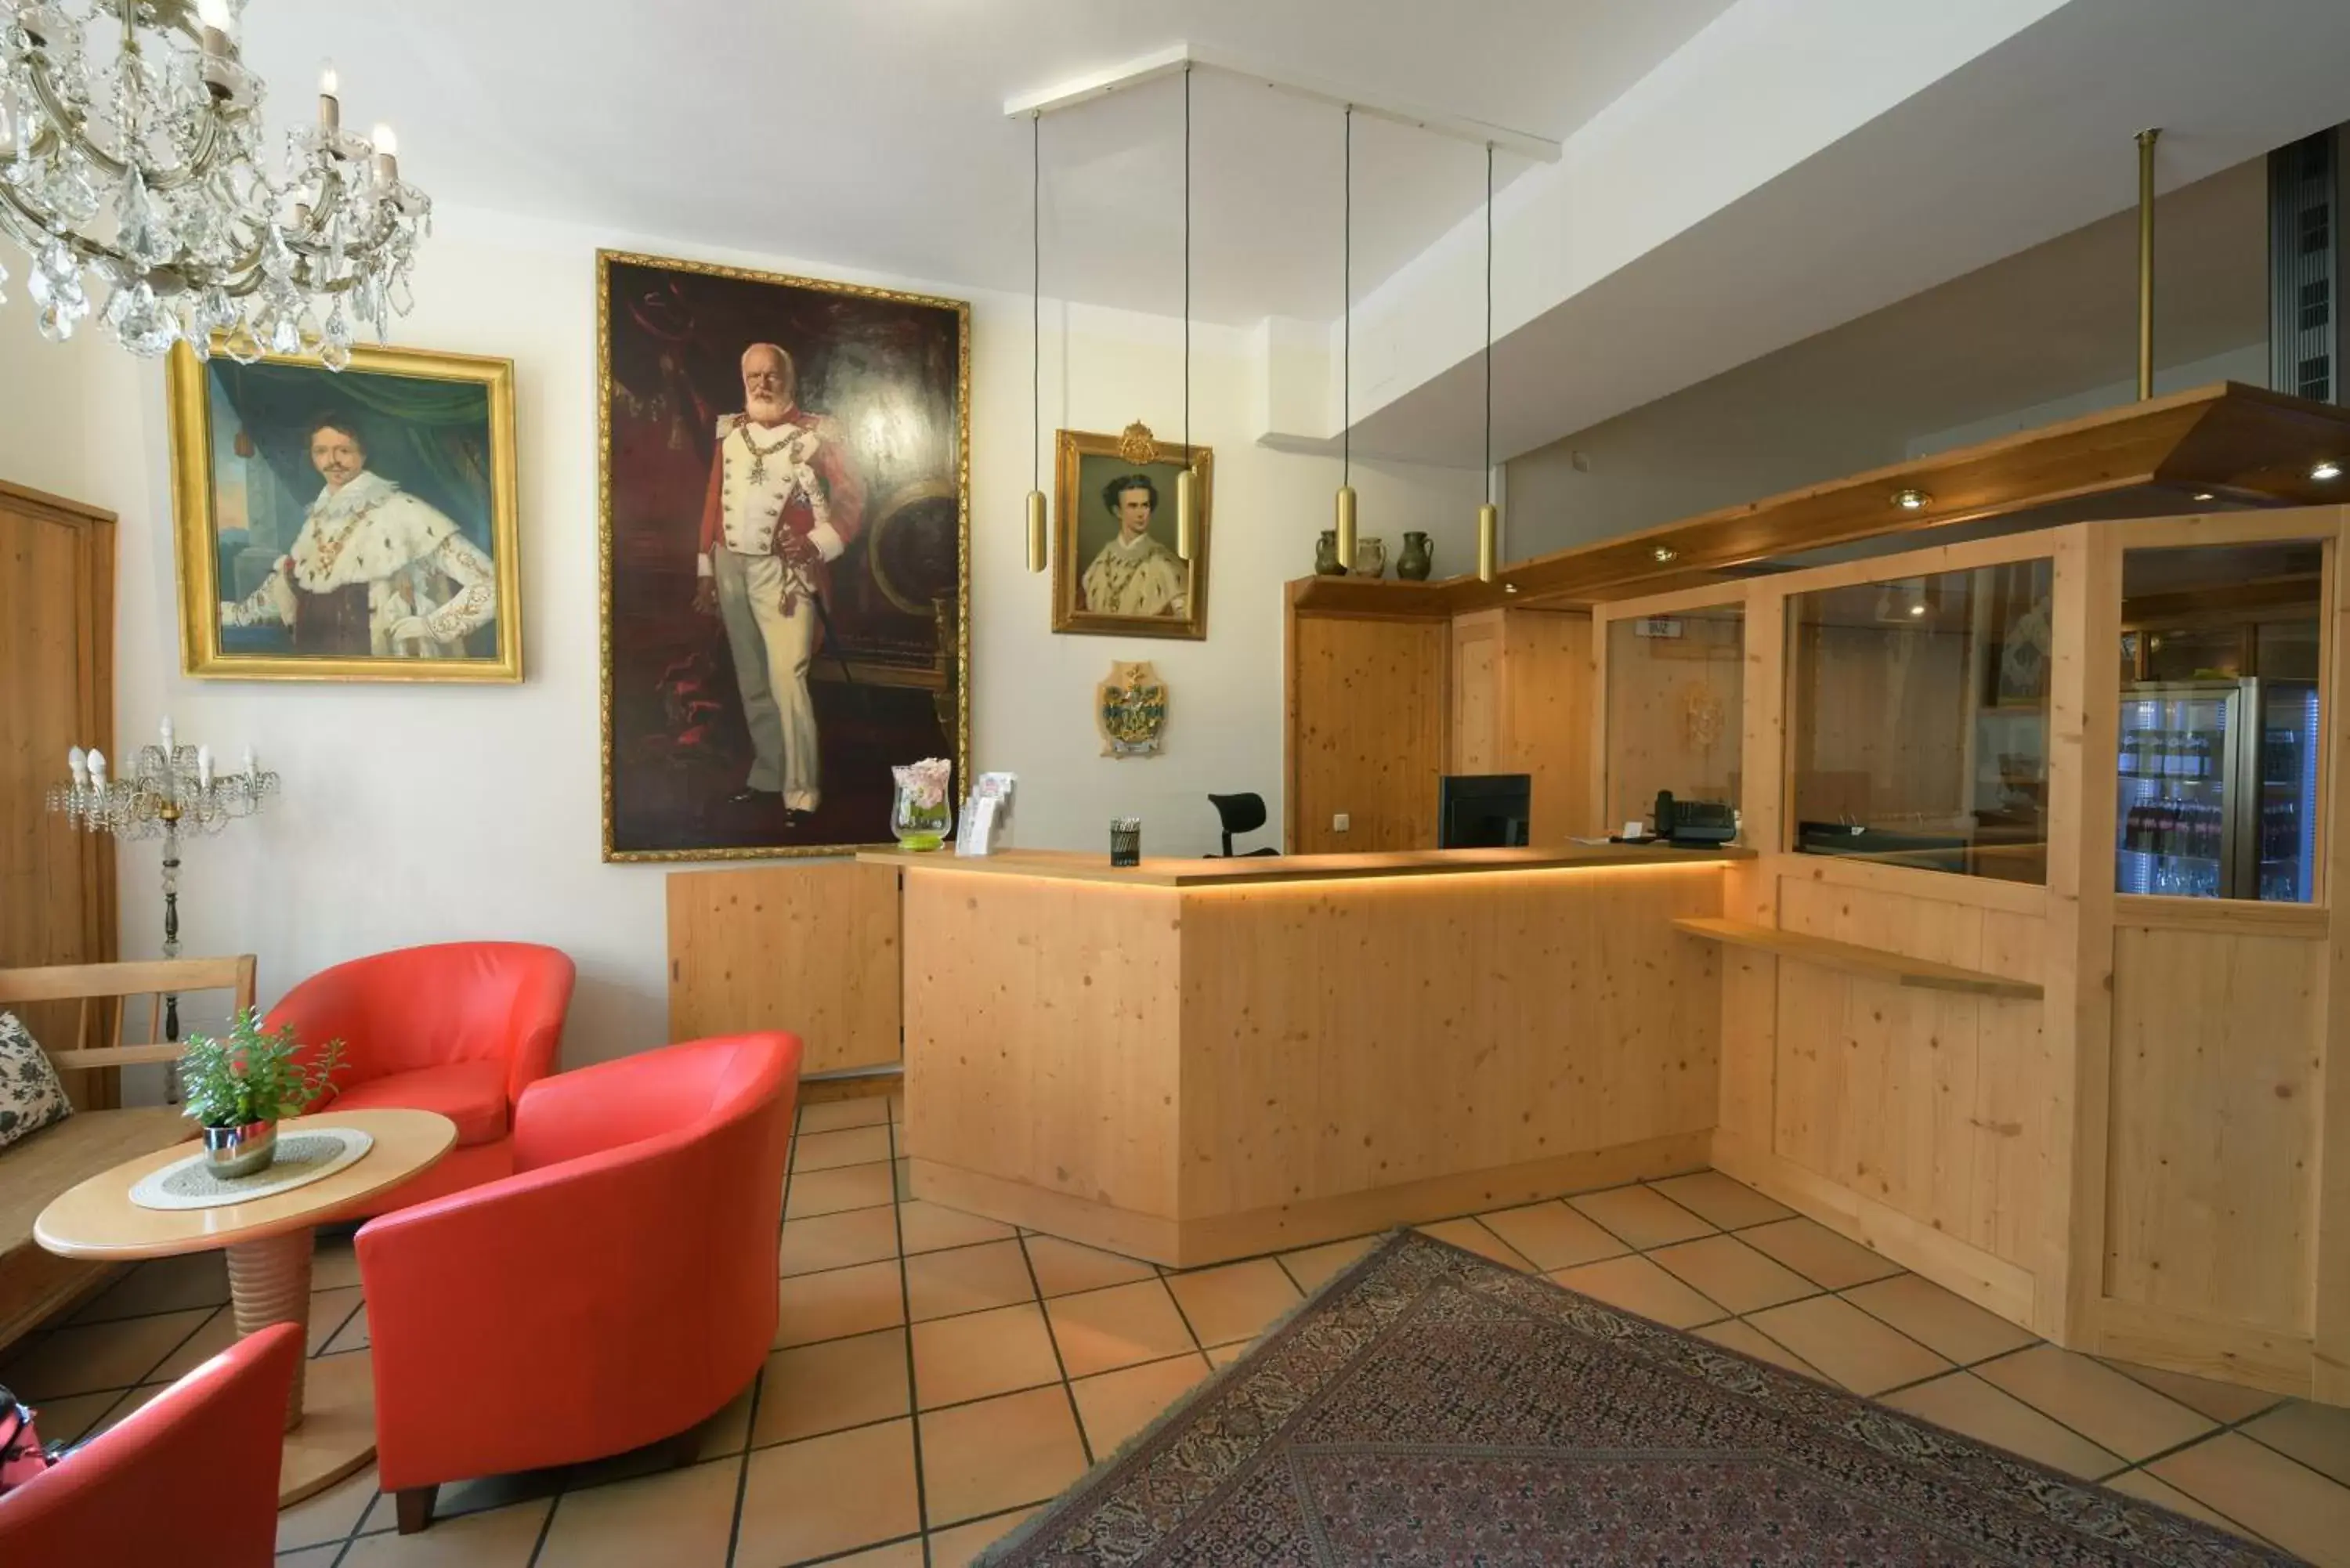 Lobby or reception, Lobby/Reception in Hotel Eder